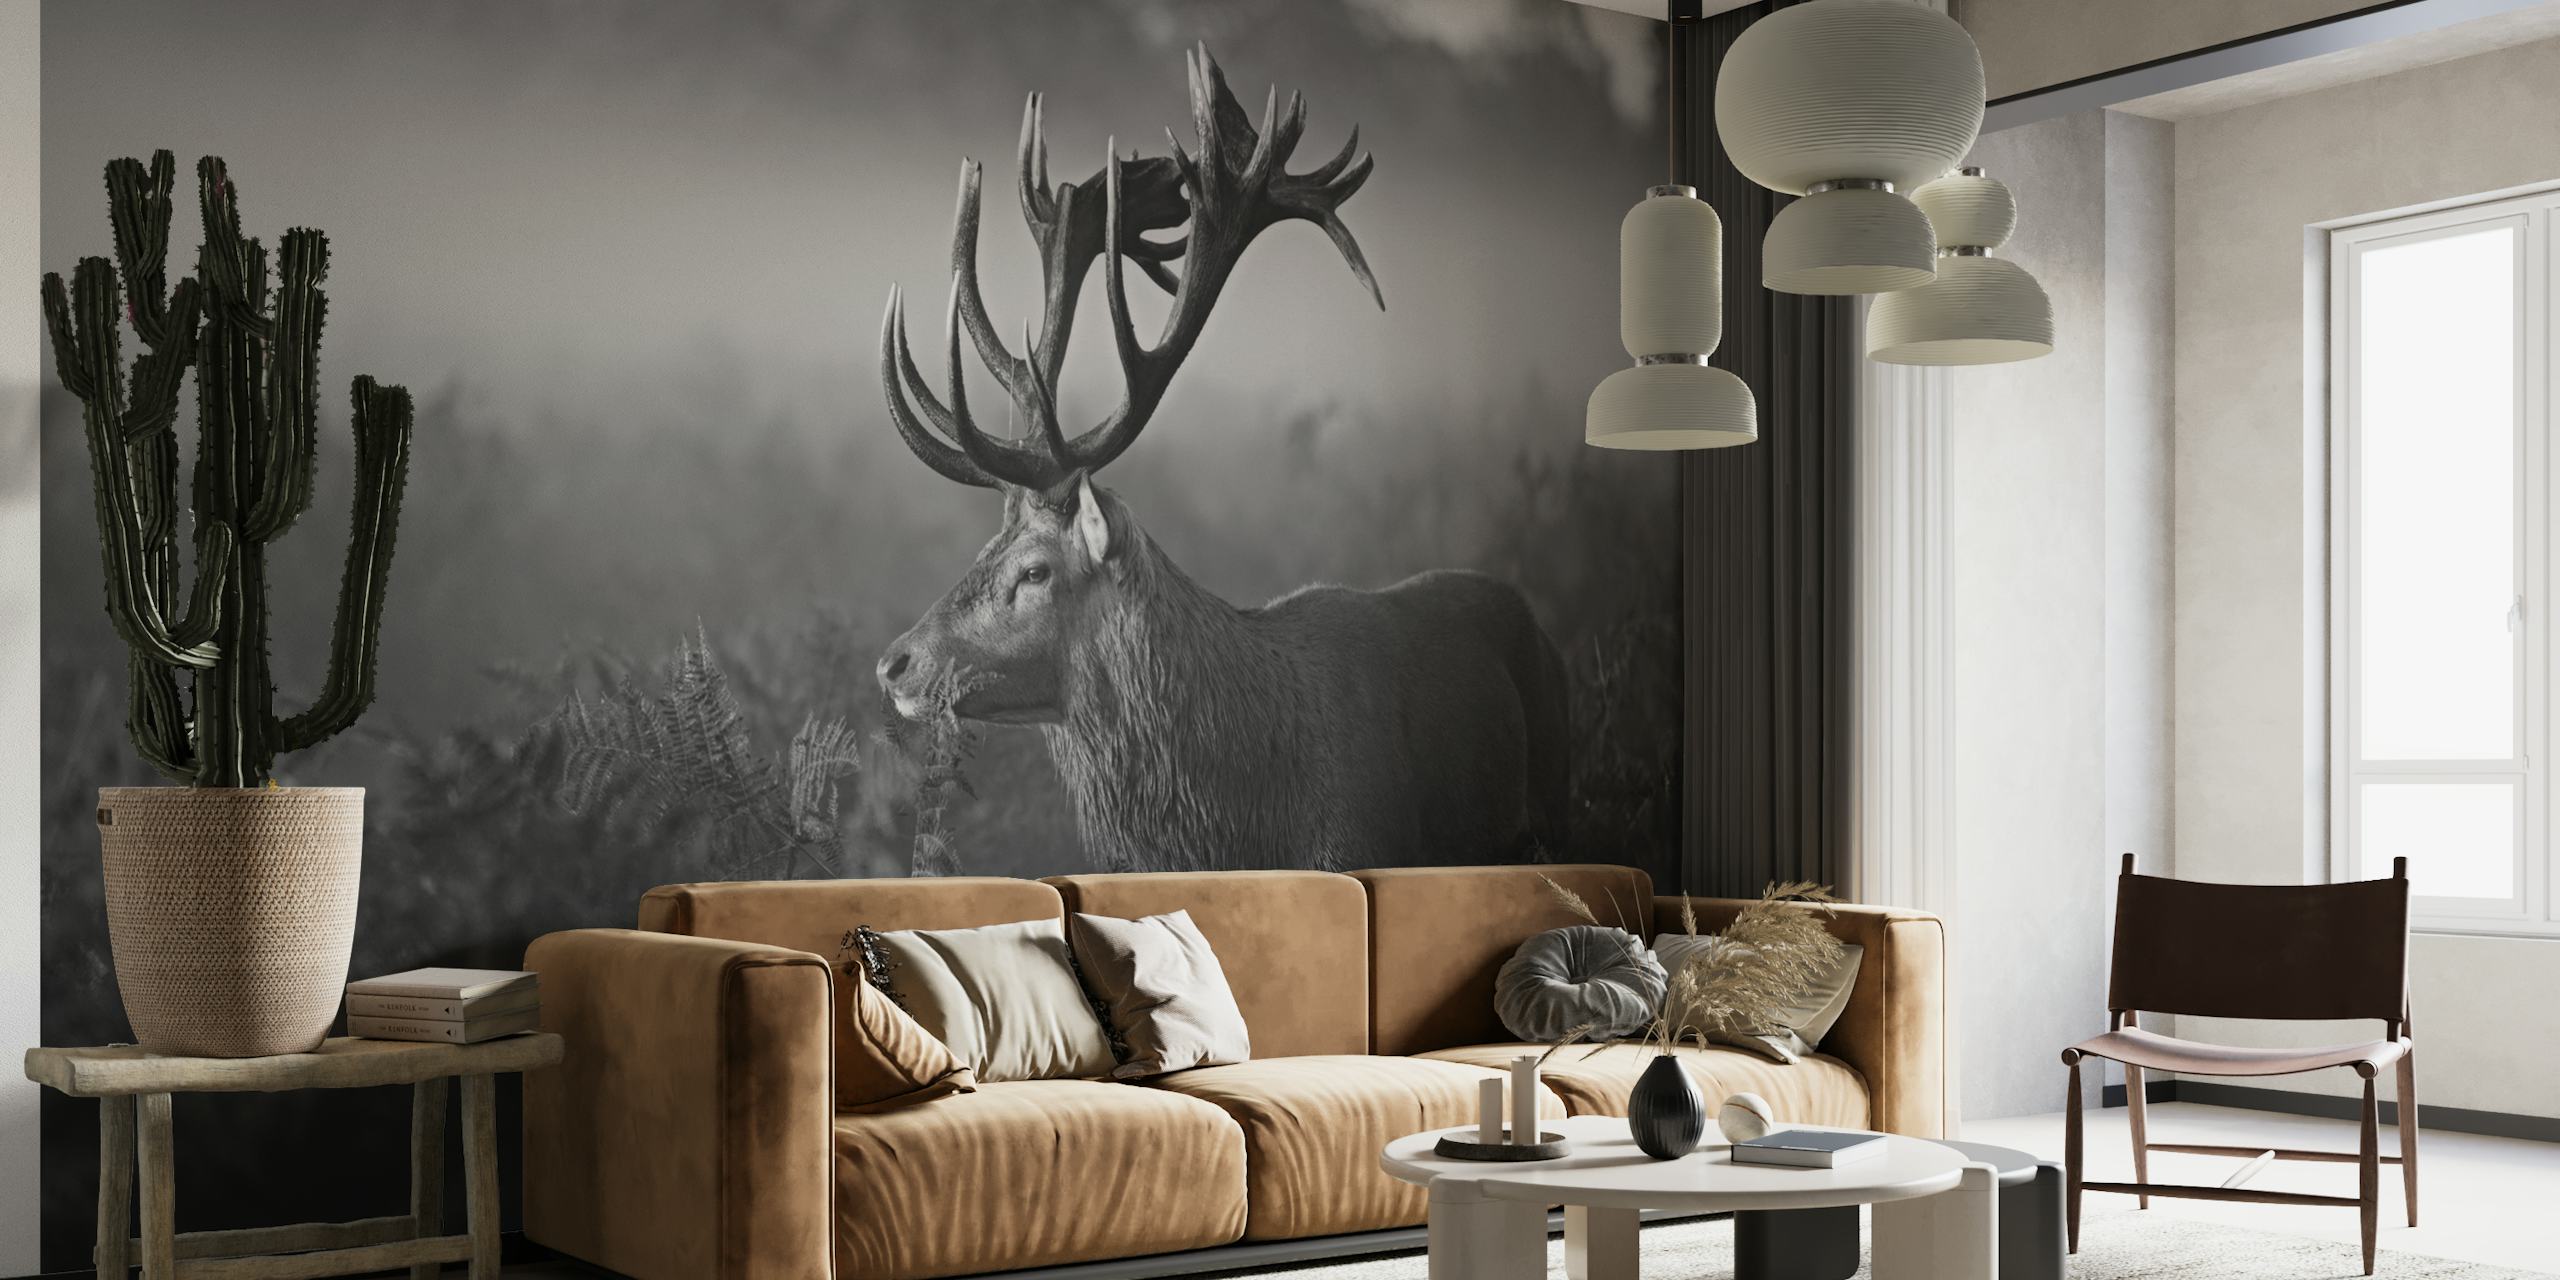 Mural en blanco y negro con un ciervo en un paisaje de bosque brumoso